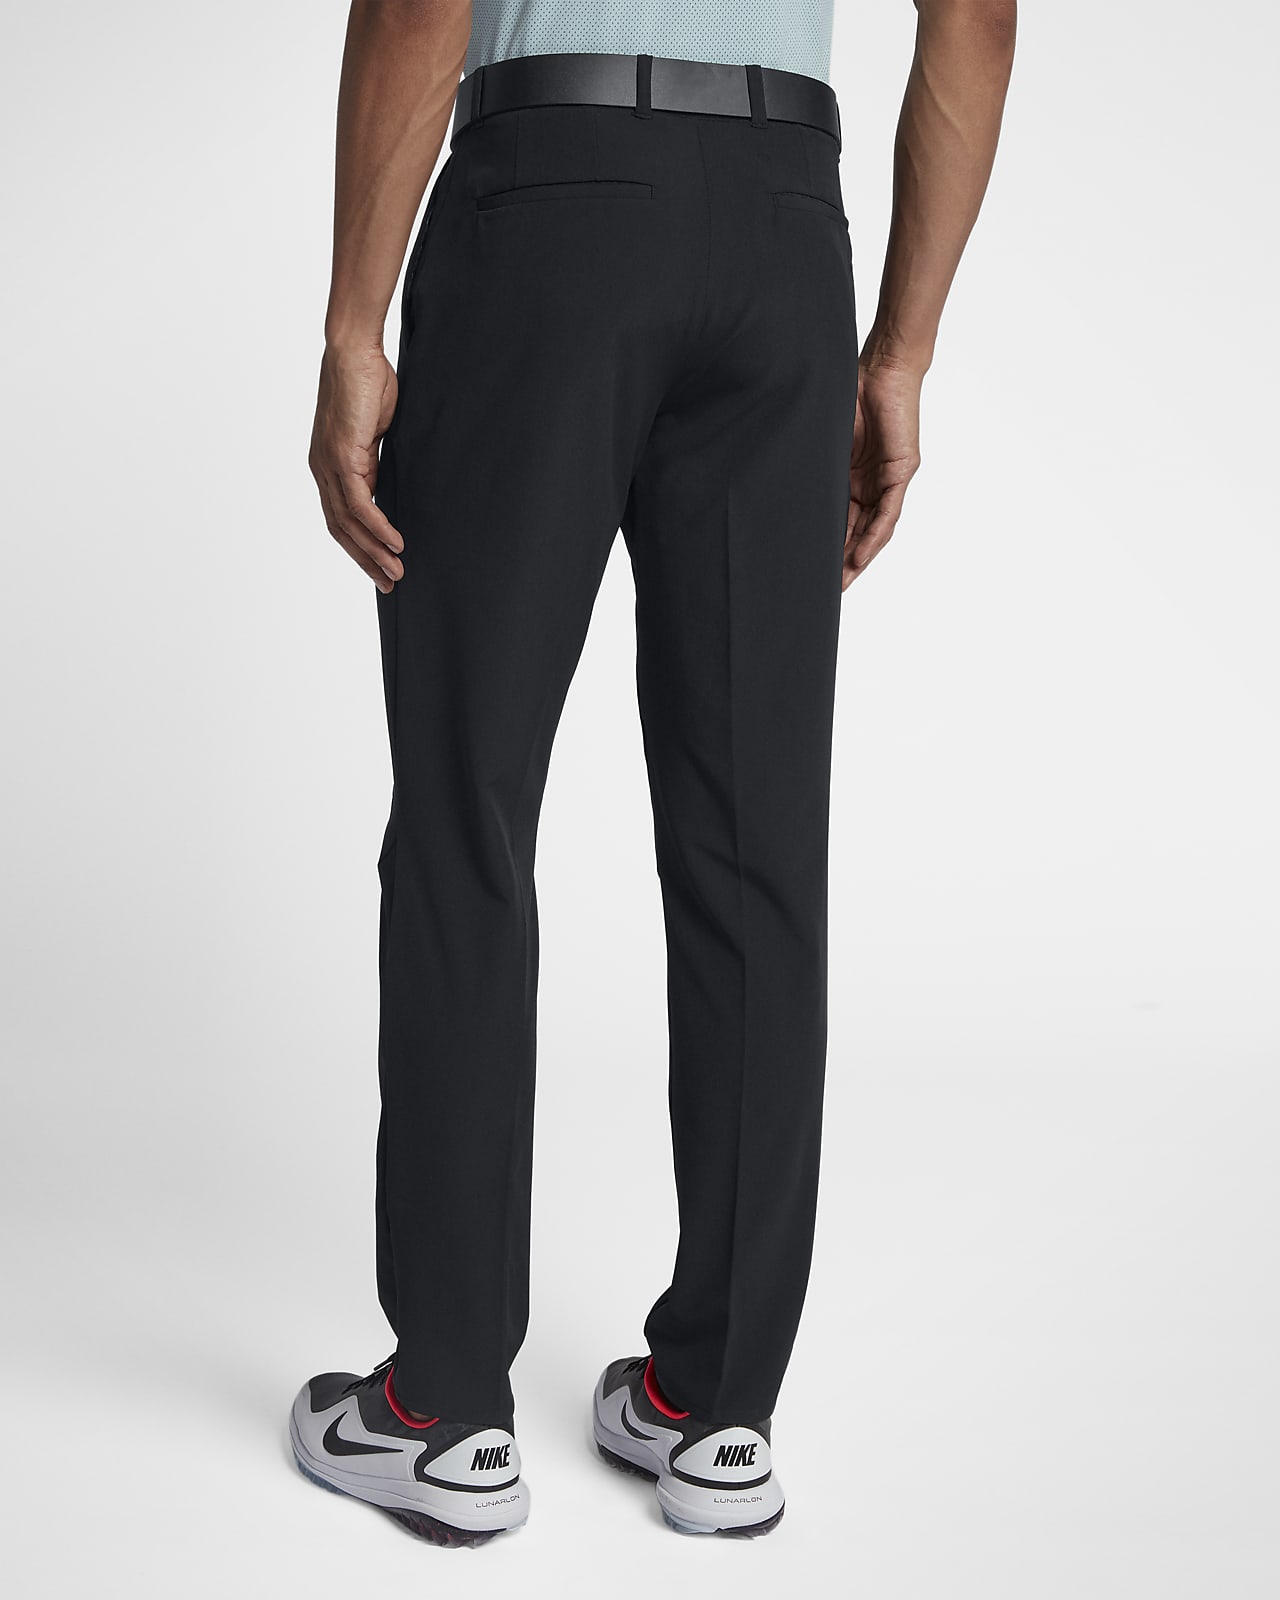 Pantalones para golf de ajuste entallado para hombre Nike Flex. Nike CL